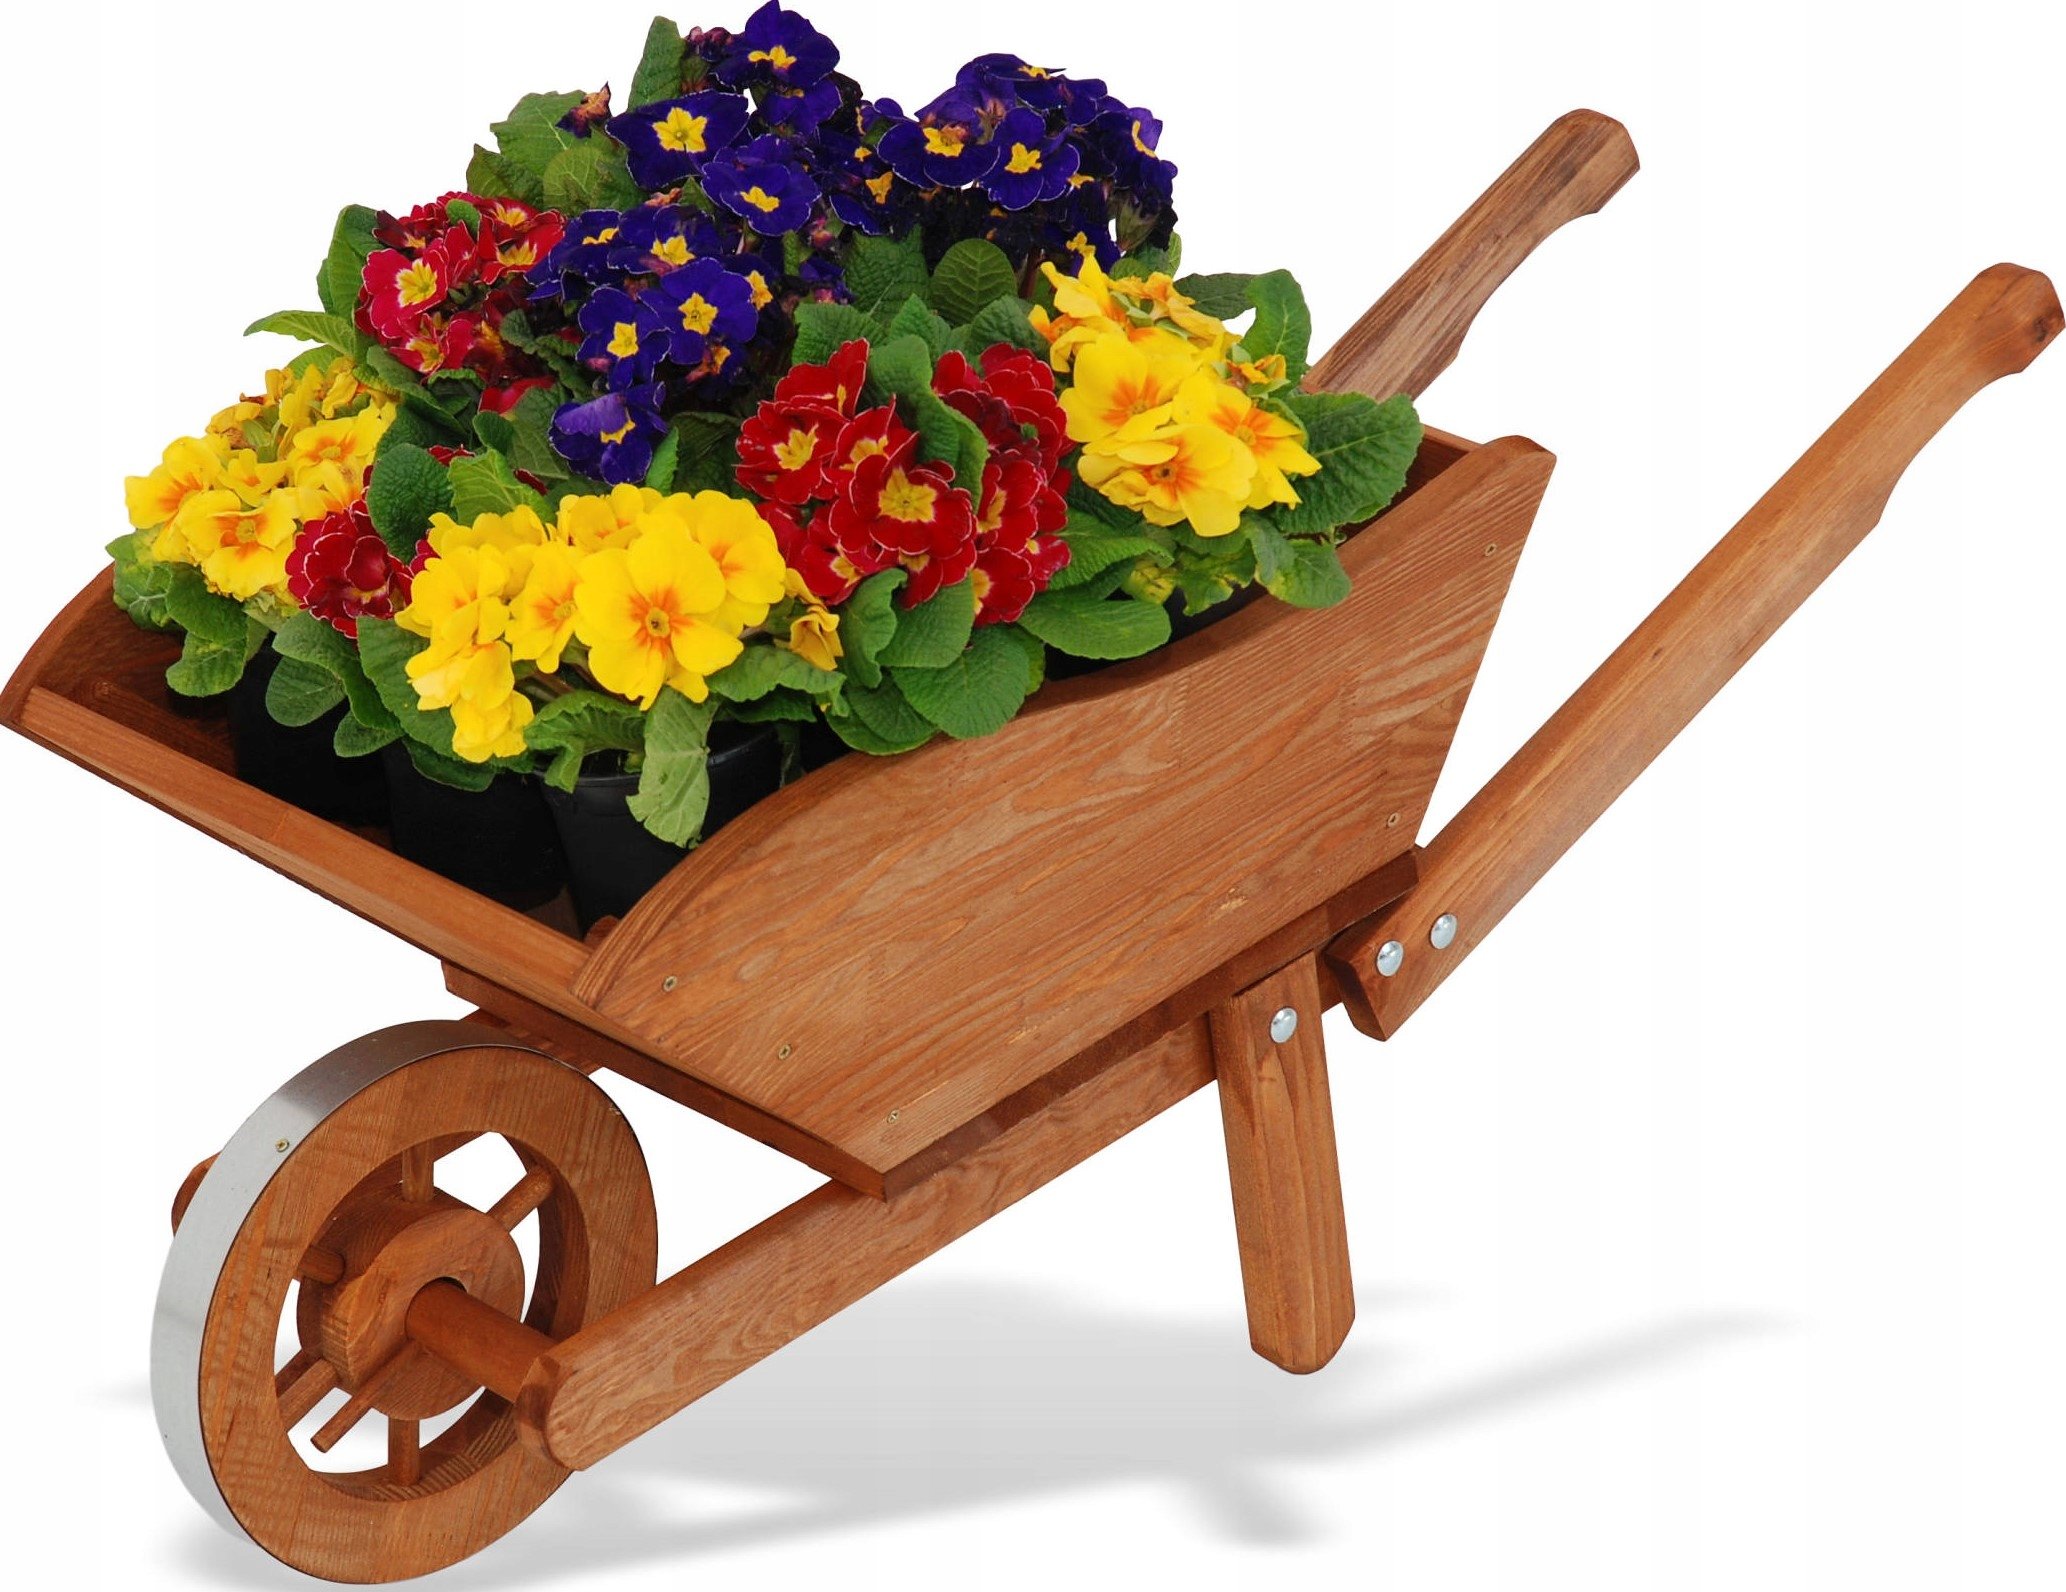 Купить деревянную телегу. Телега декоративная для сада. Тачка декоративная для сада. Телега клумба для цветов. Деревянные цветочницы для сада.